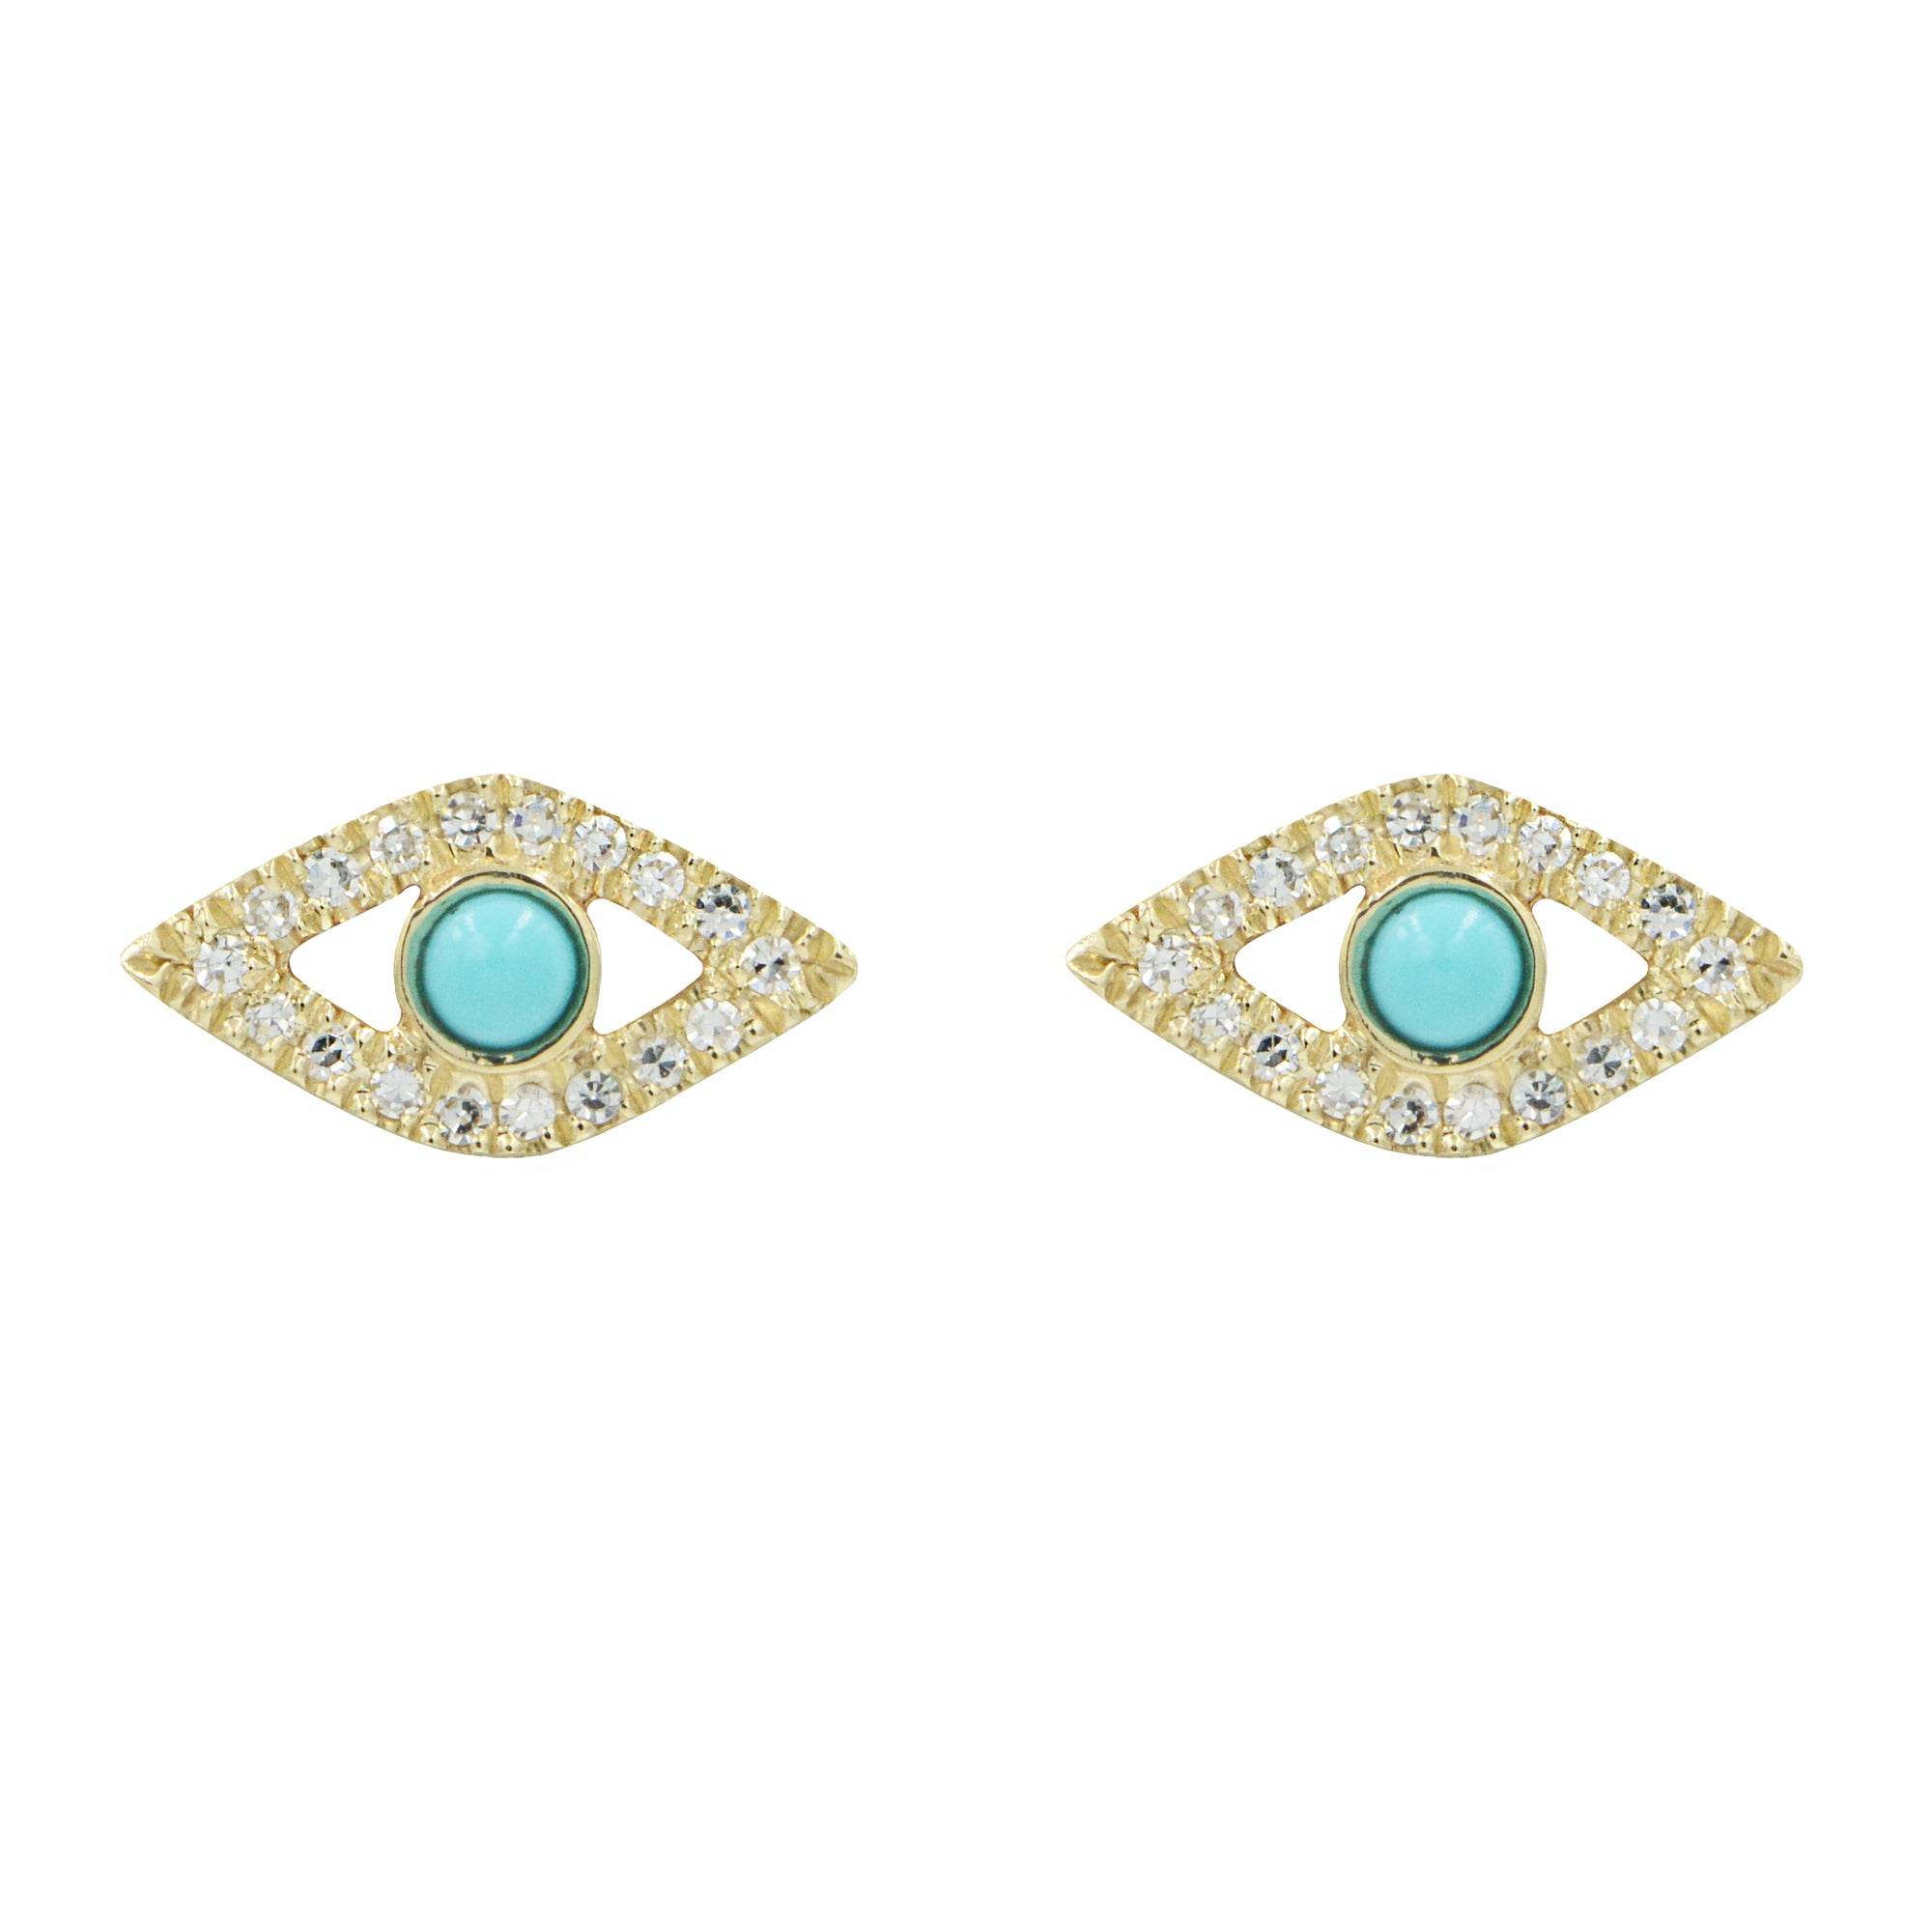 Turquoise Evil Eye Stud Earrings With Diamonds